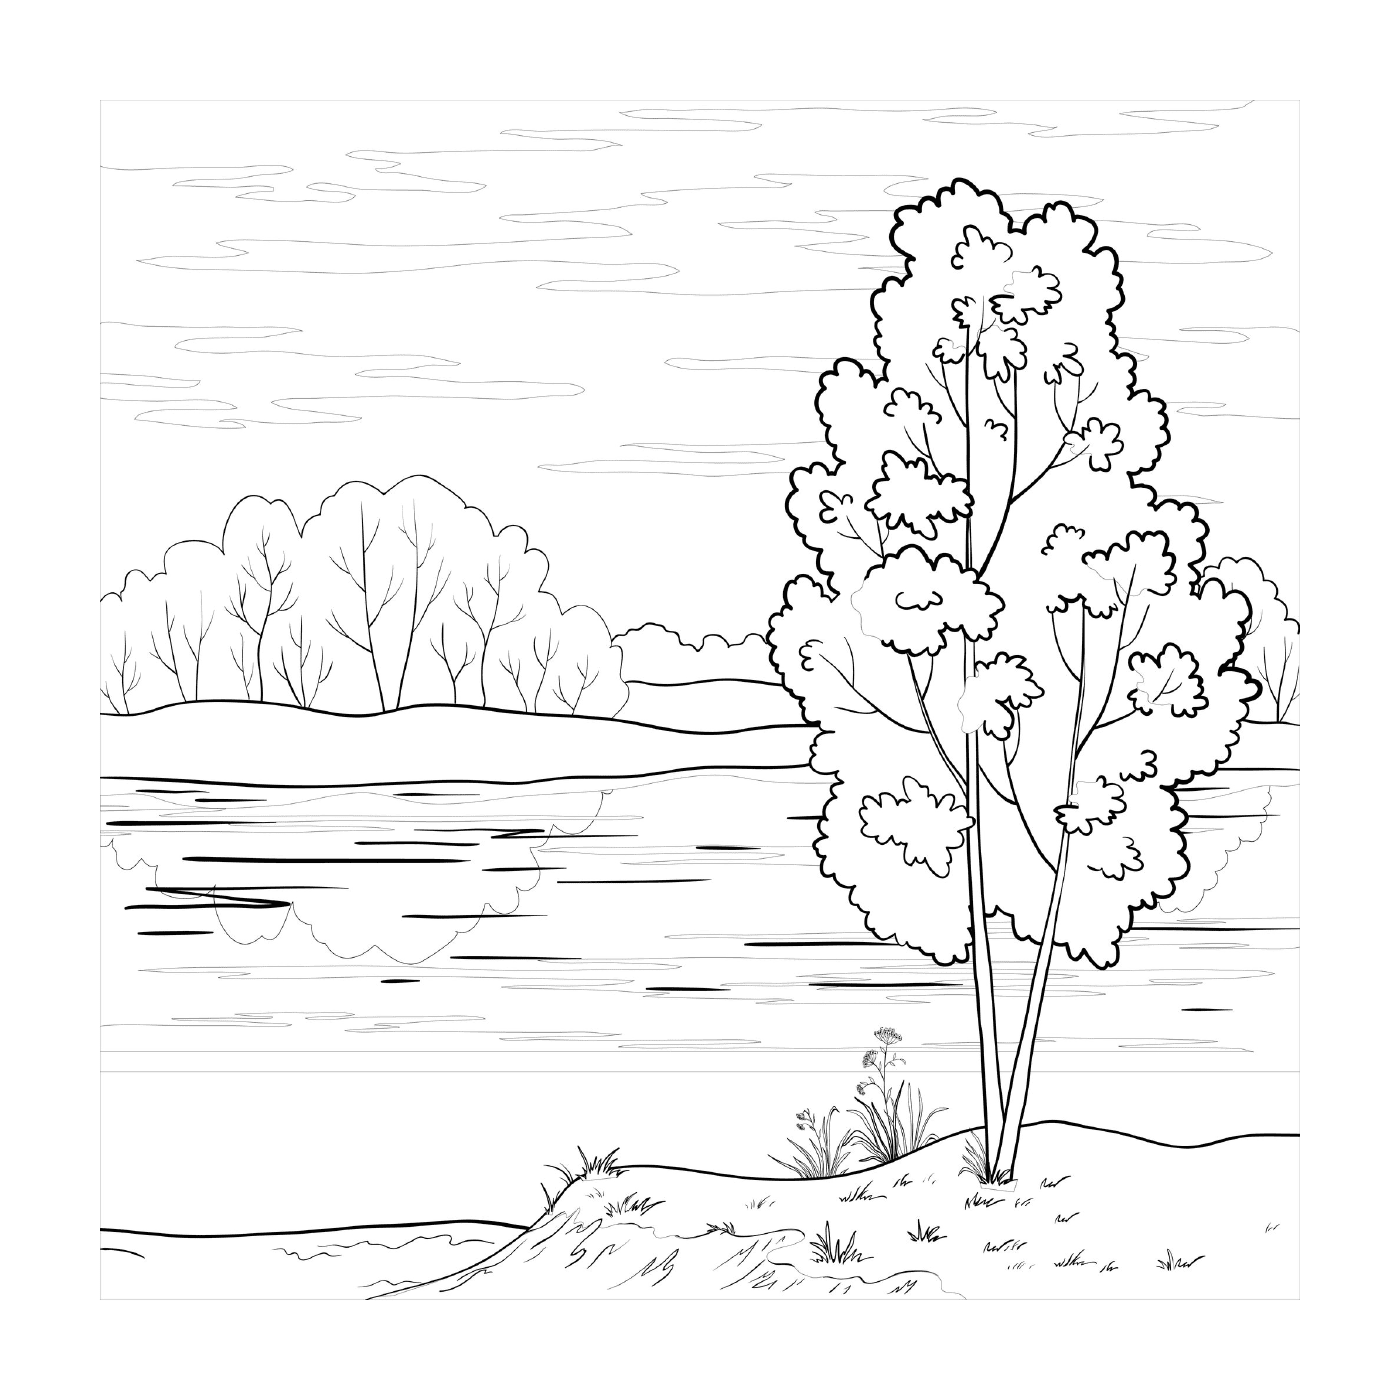  Un árbol junto a un lago 